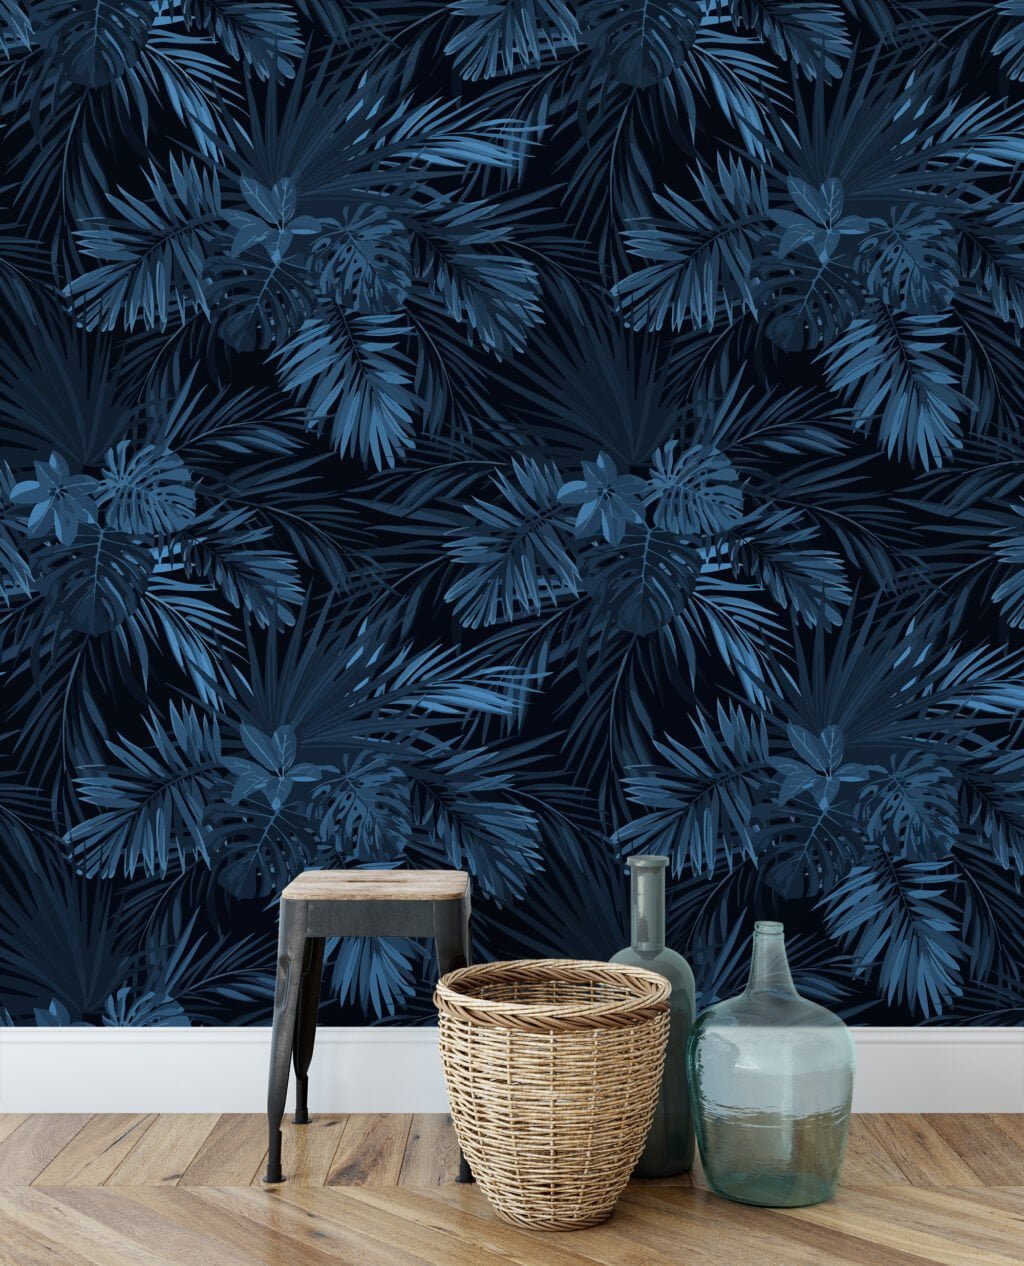 Gece Mavisi Tropikal Yapraklar Duvar Kağıdı, Lüks Koyu Yaprak Desenli 3D Duvar Posteri Yaprak Desenli Duvar Kağıtları 5